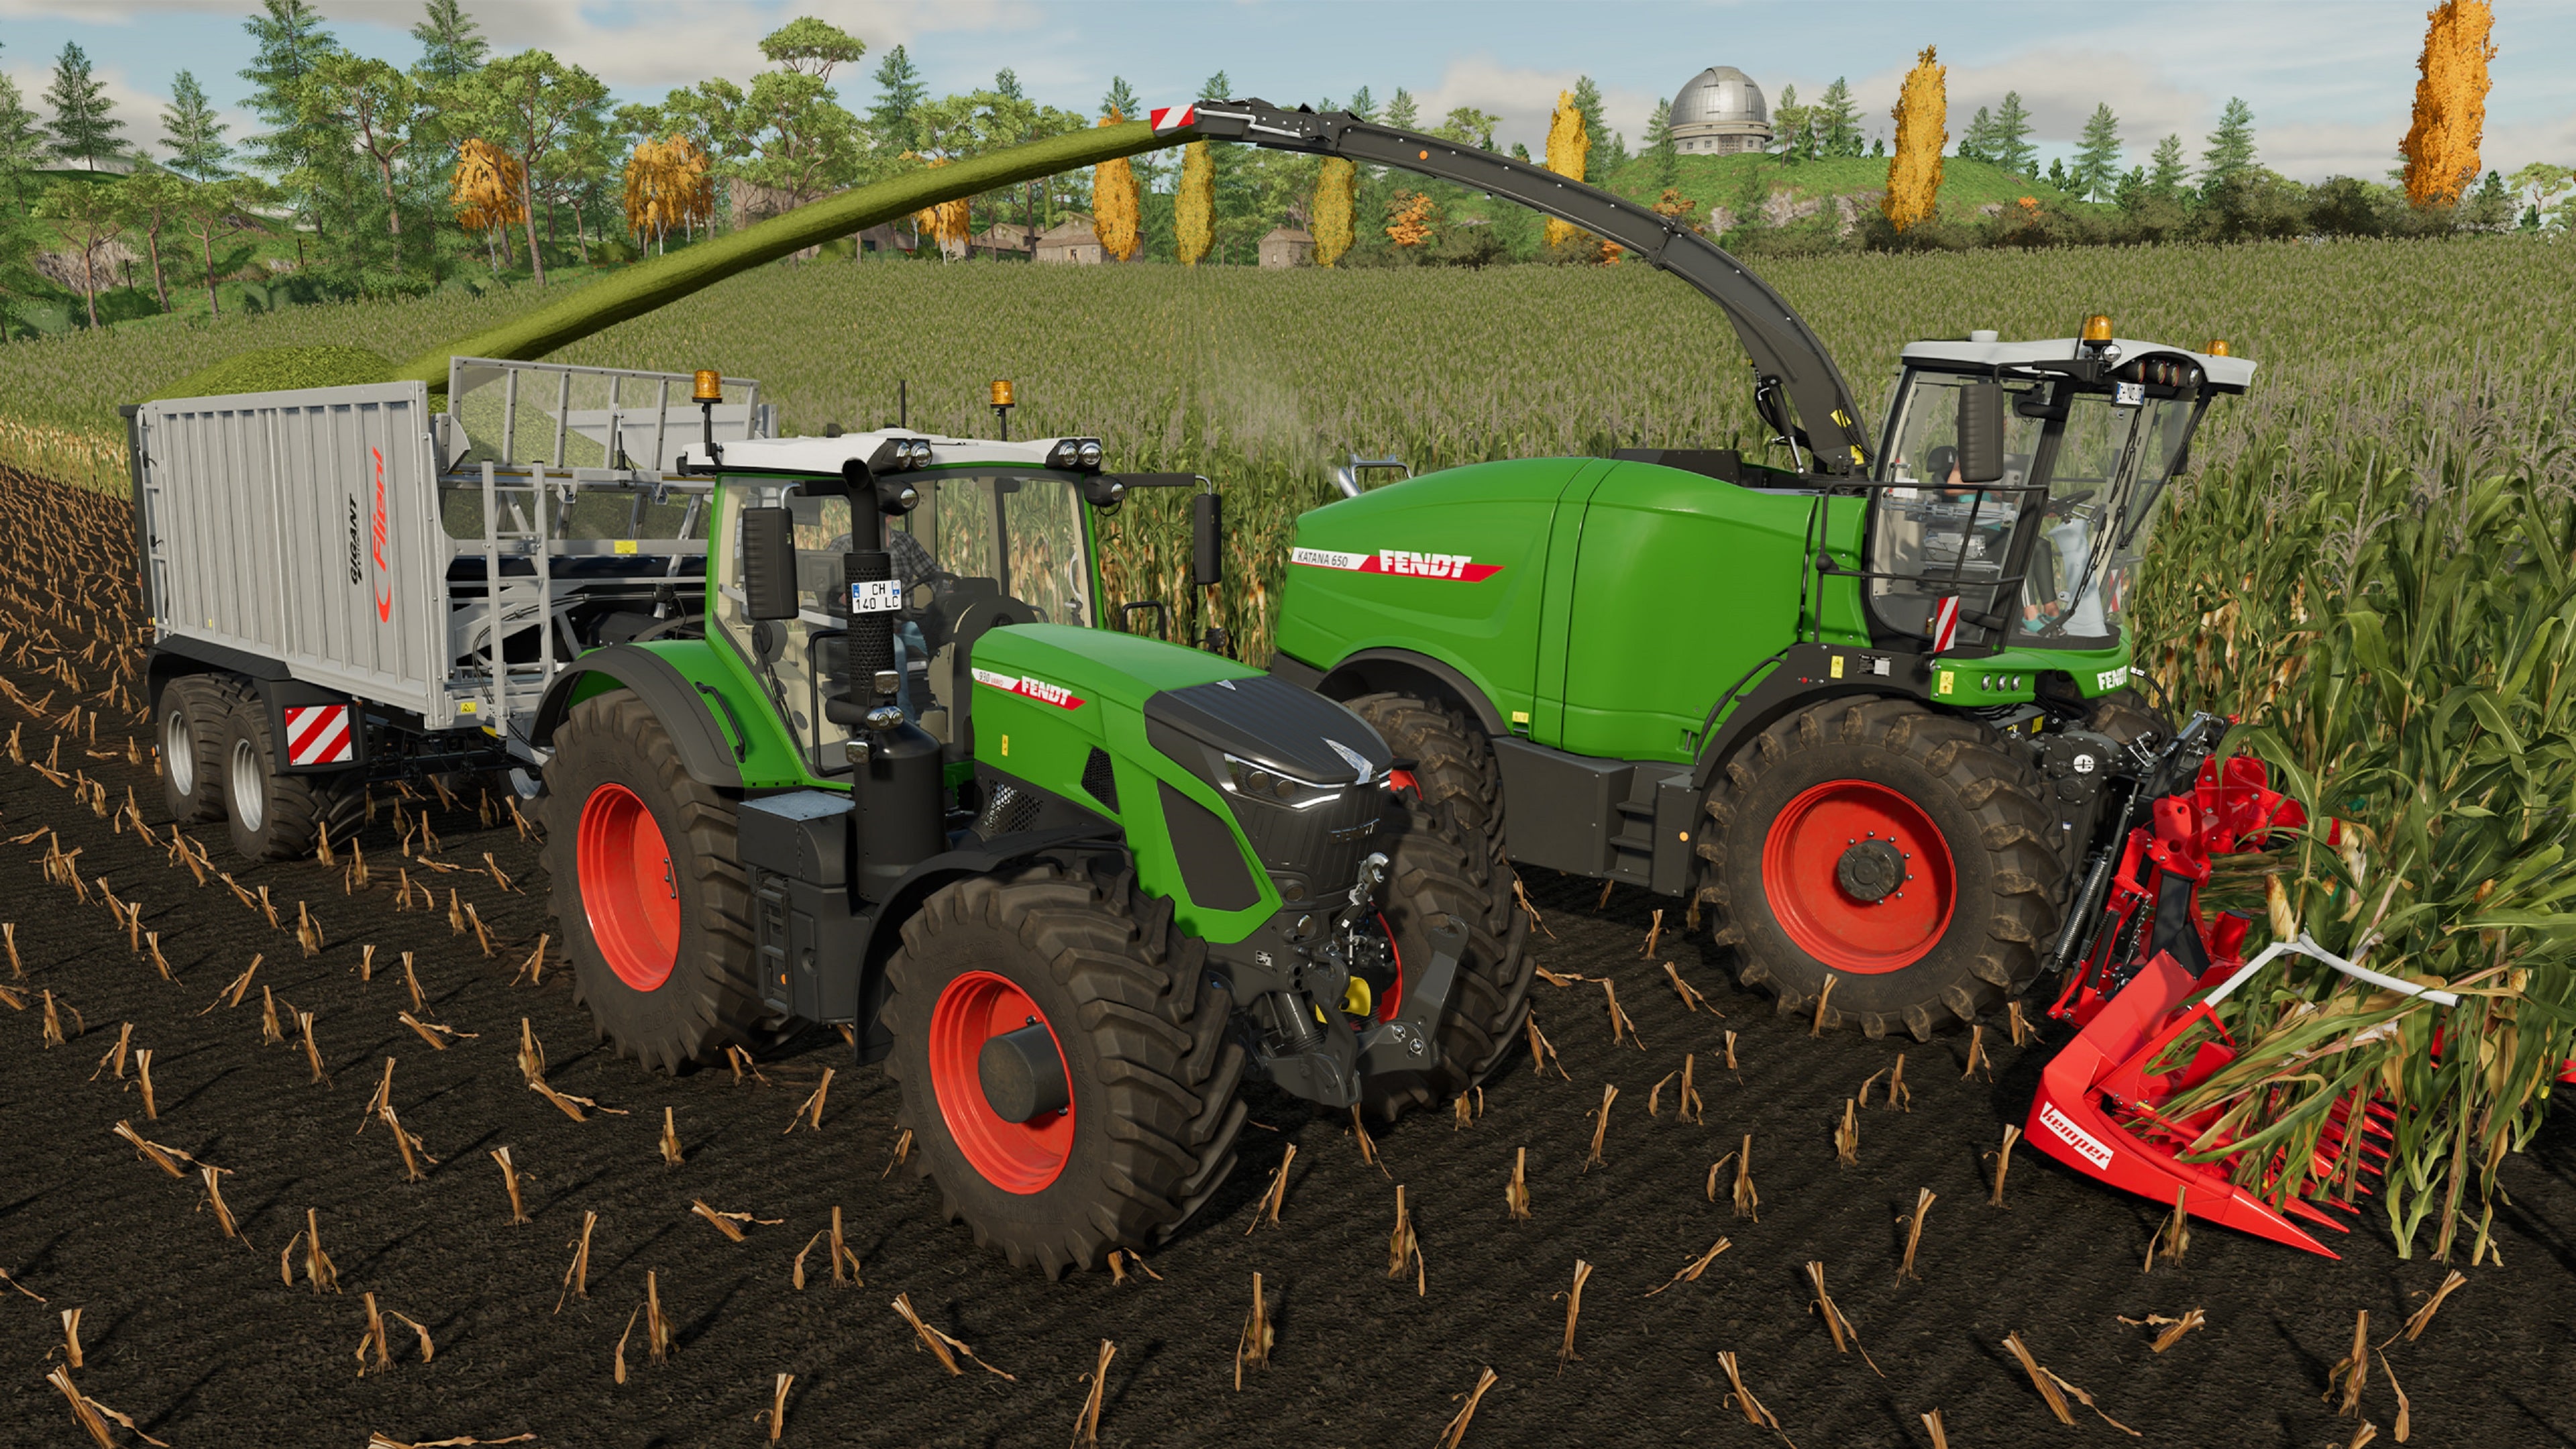 Farming Simulator 22 - Zetor 25 K (Steam) - DreamGame - Official Retailer  of Game Codes